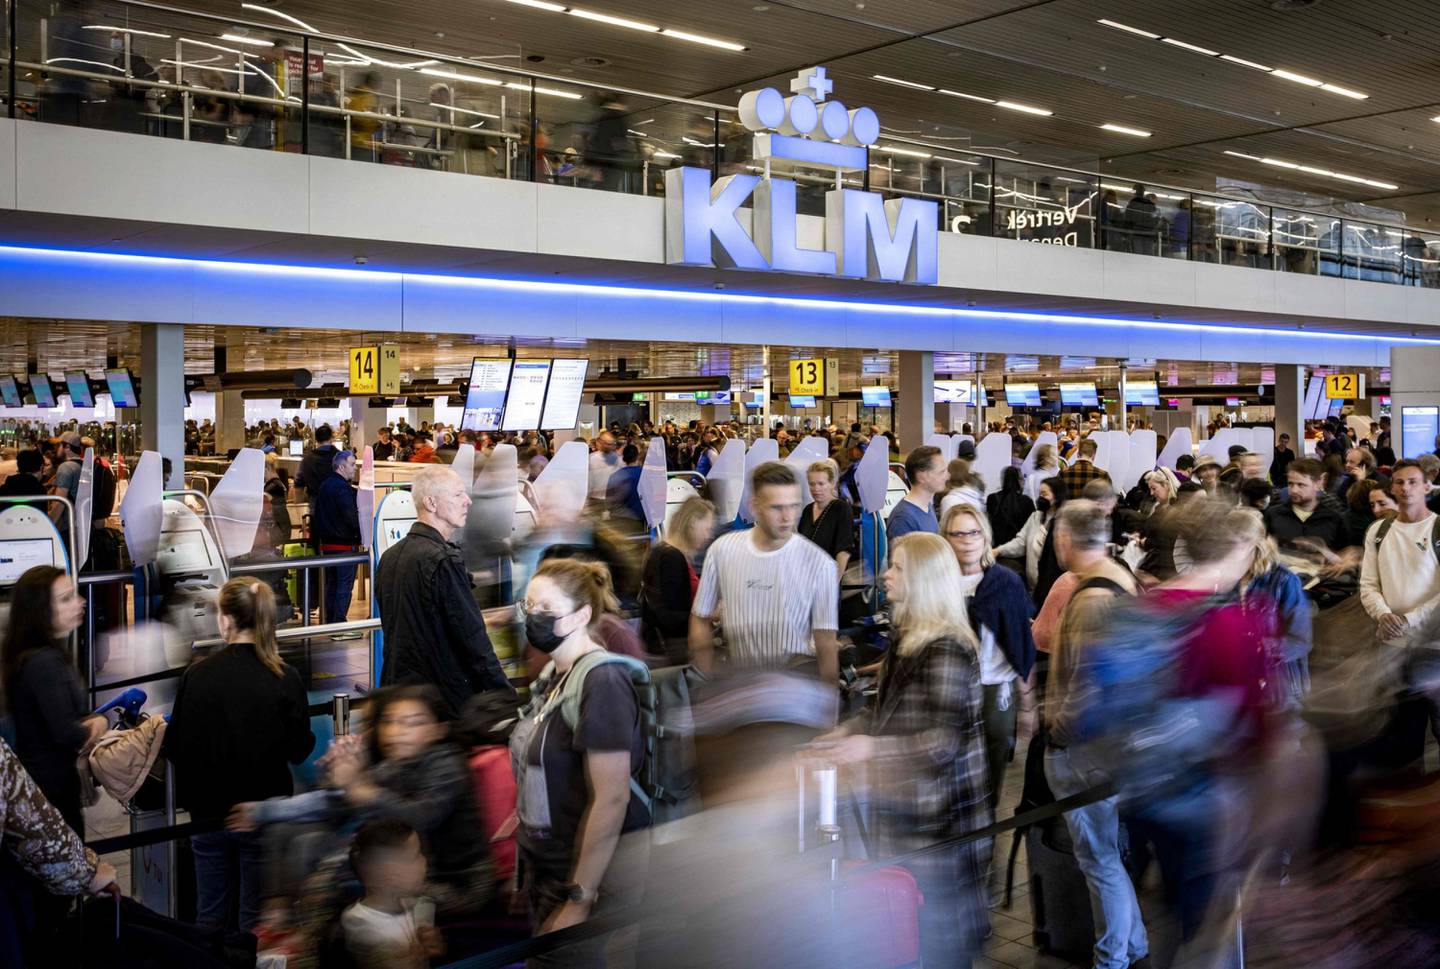 Viajeros esperan en una sala de salidas del aeropuerto de Schiphol, cerca de Ámsterdam. Fotógrafo: Ramon Van Flymen/AFP/Getty Images